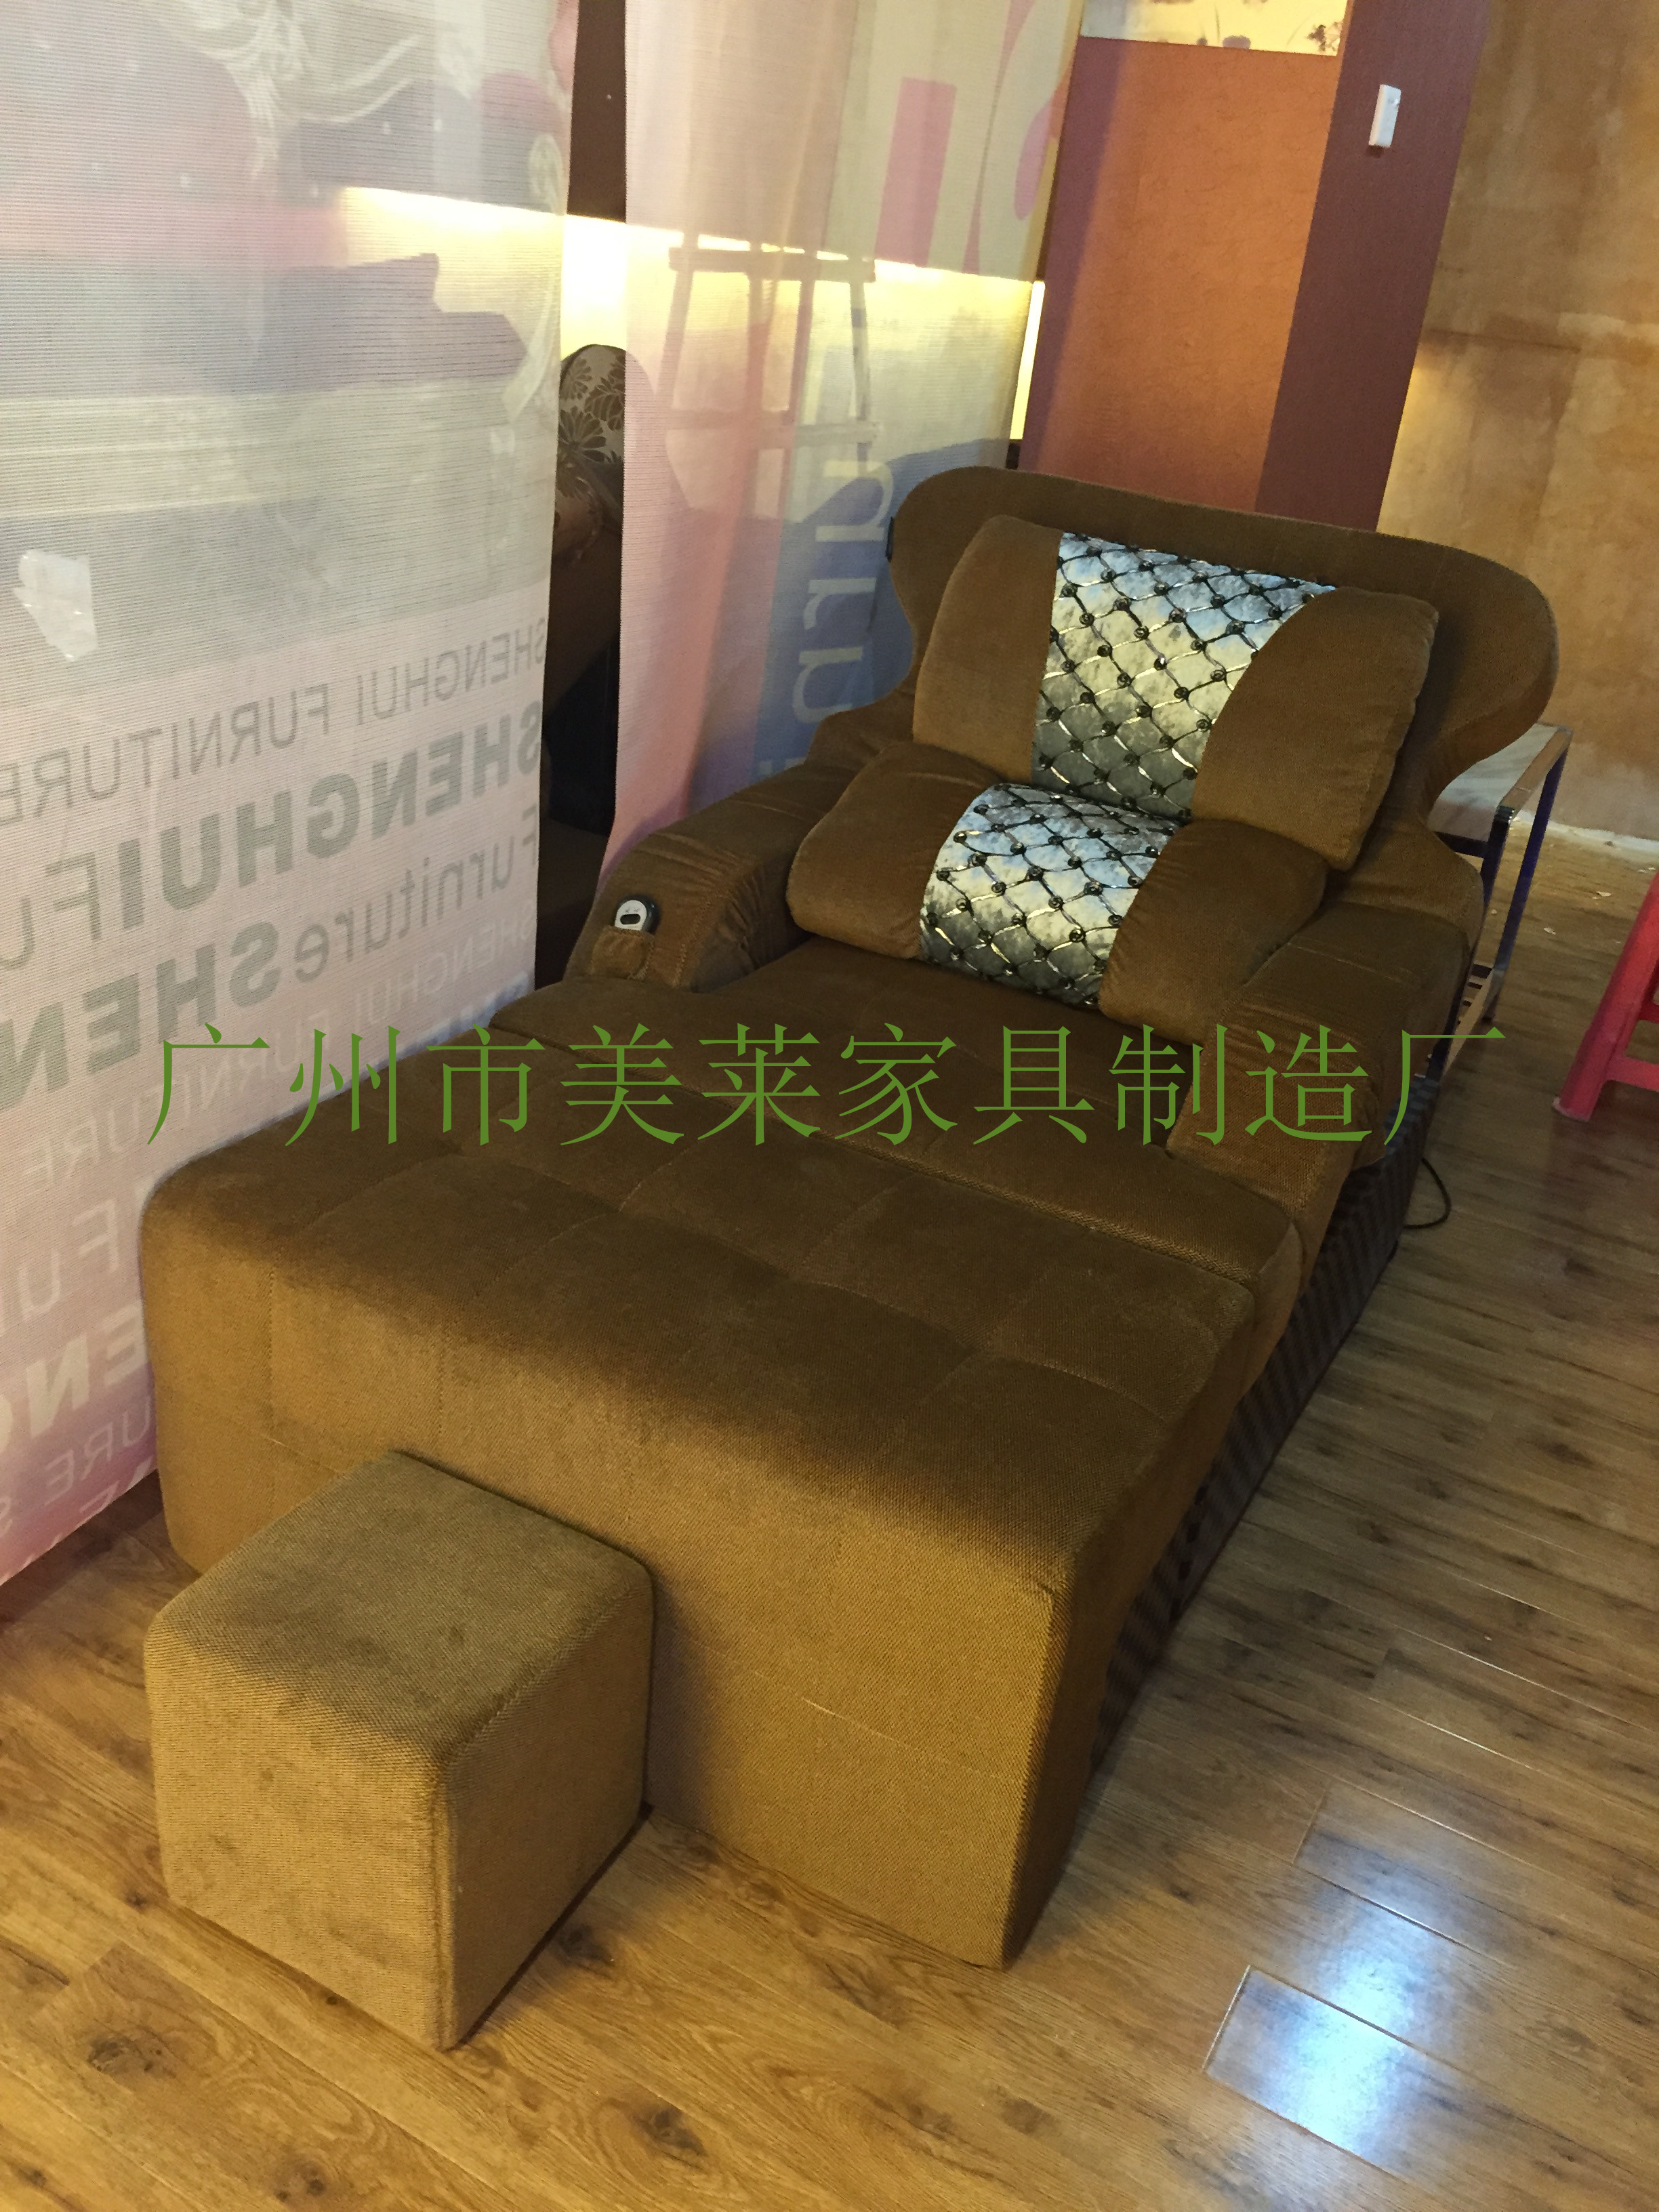 供应美莱新款沐足沙发，定做沐足沙发选择广州市美莱沐足沙发厂